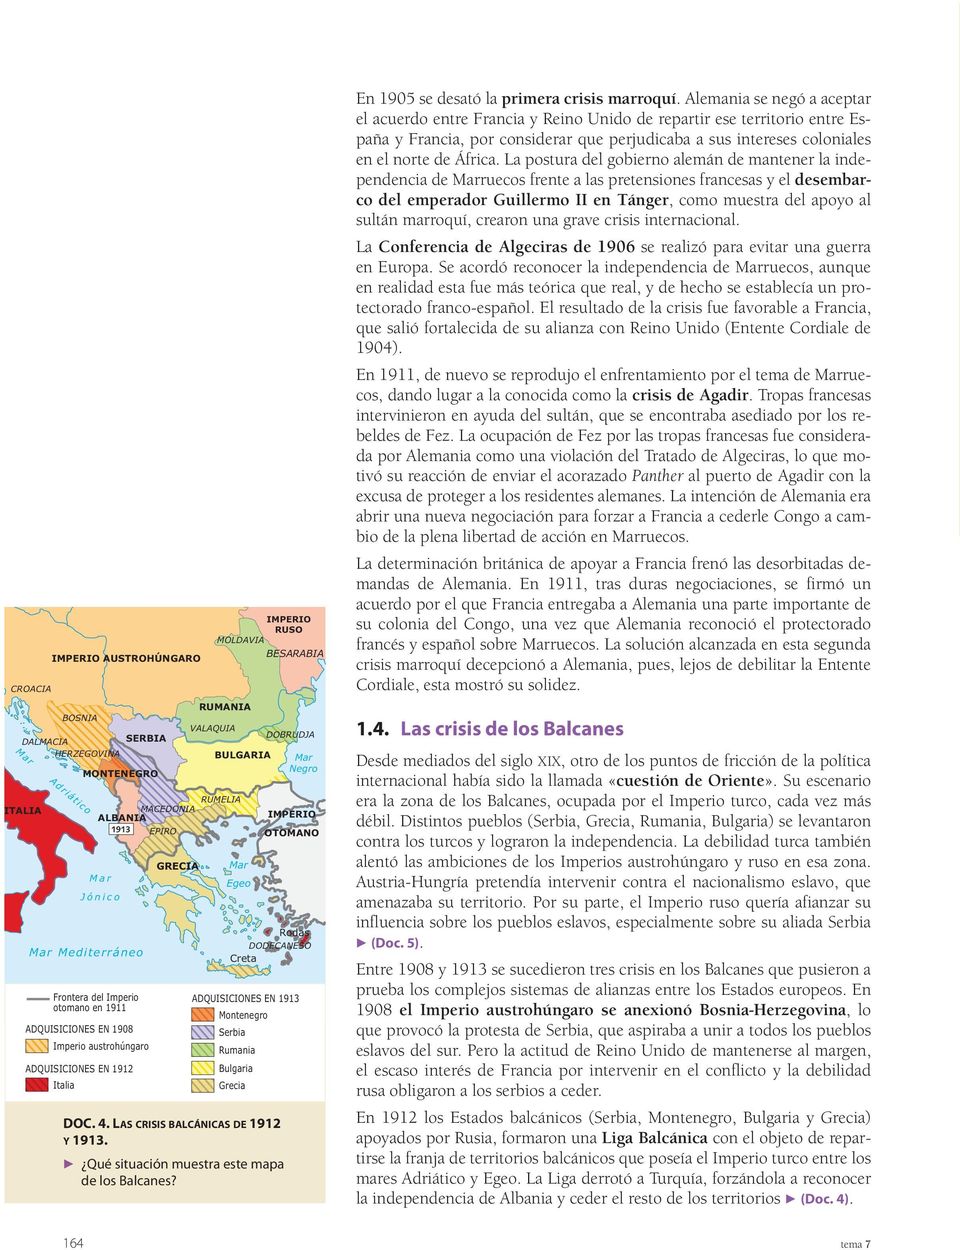 Montenegro Serbia Rumania Bulgaria Grecia DOC. 4. LAS CRISIS BALCÁNICAS DE 1912 Y 1913. F Qué situación muestra este mapa de los Balcanes?